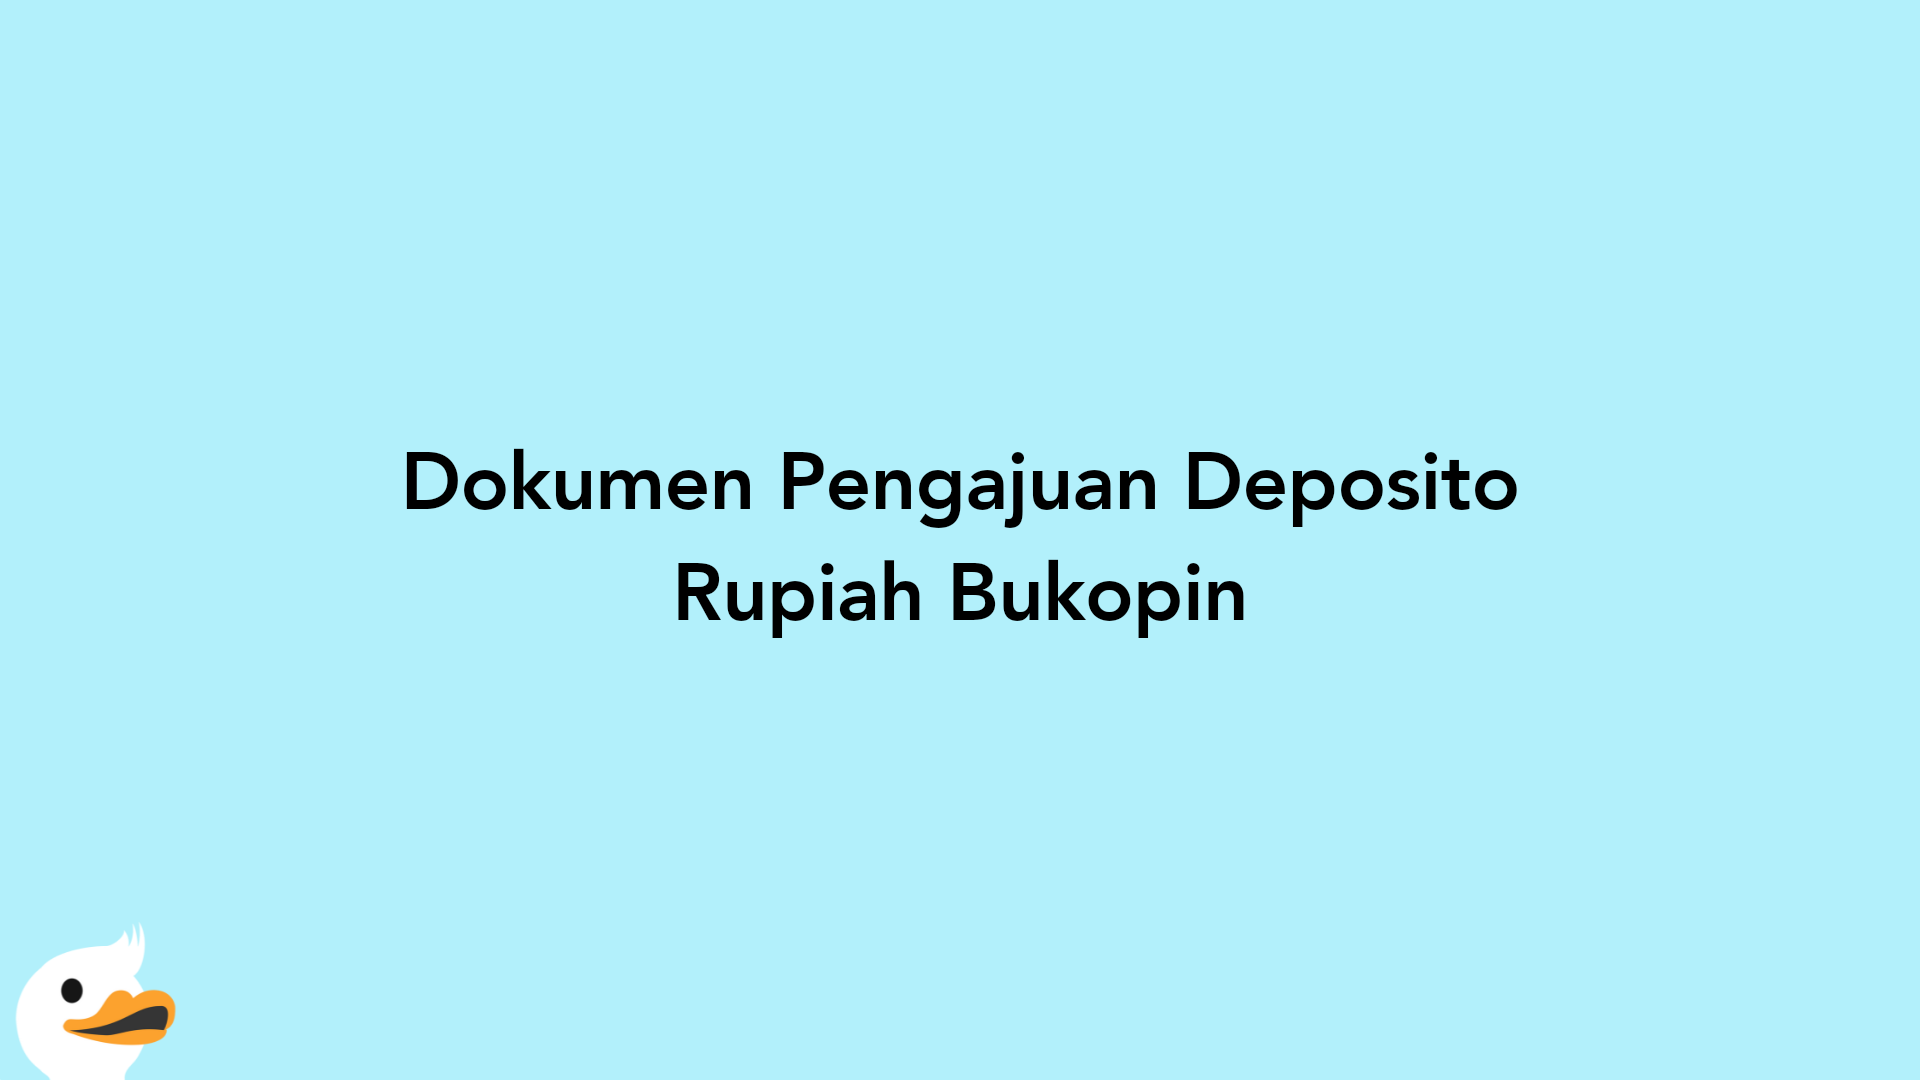 Dokumen Pengajuan Deposito Rupiah Bukopin